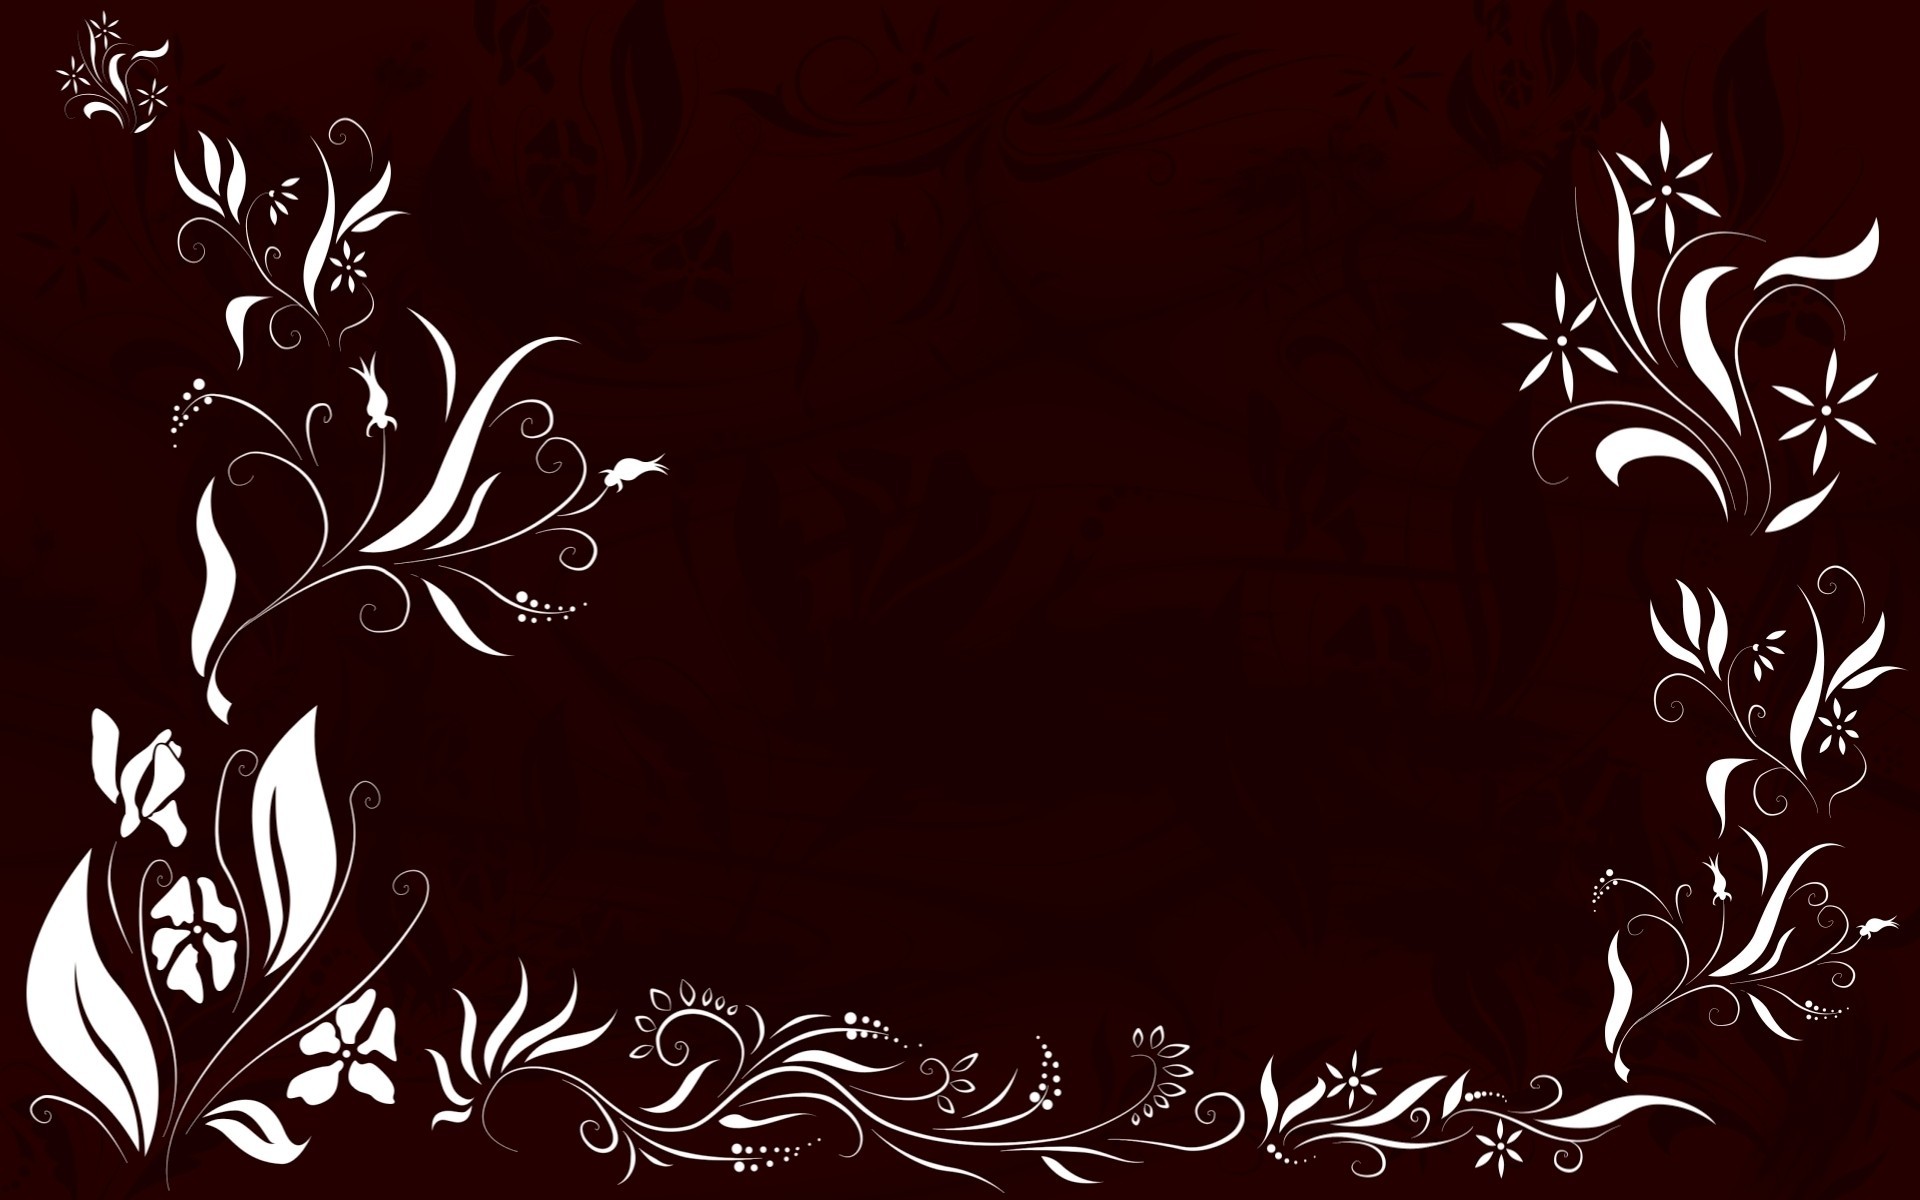 Black Floral Swirl Designs powerpoint background